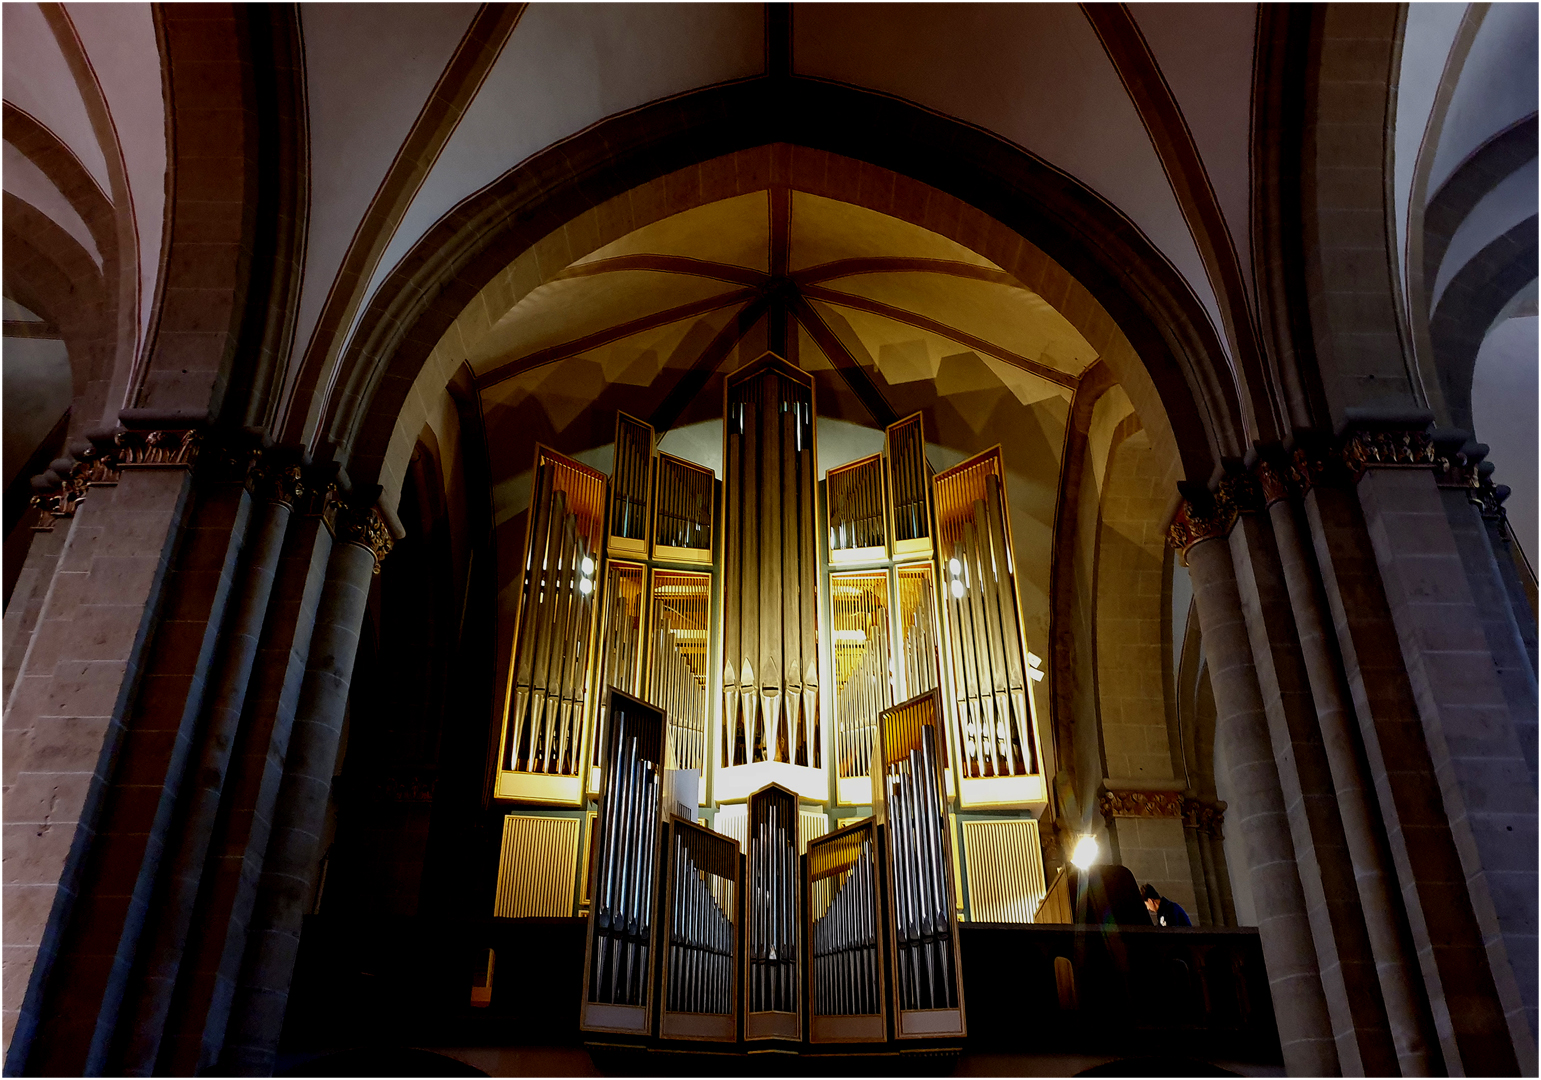 Zeit für ein Orgelkonzert?